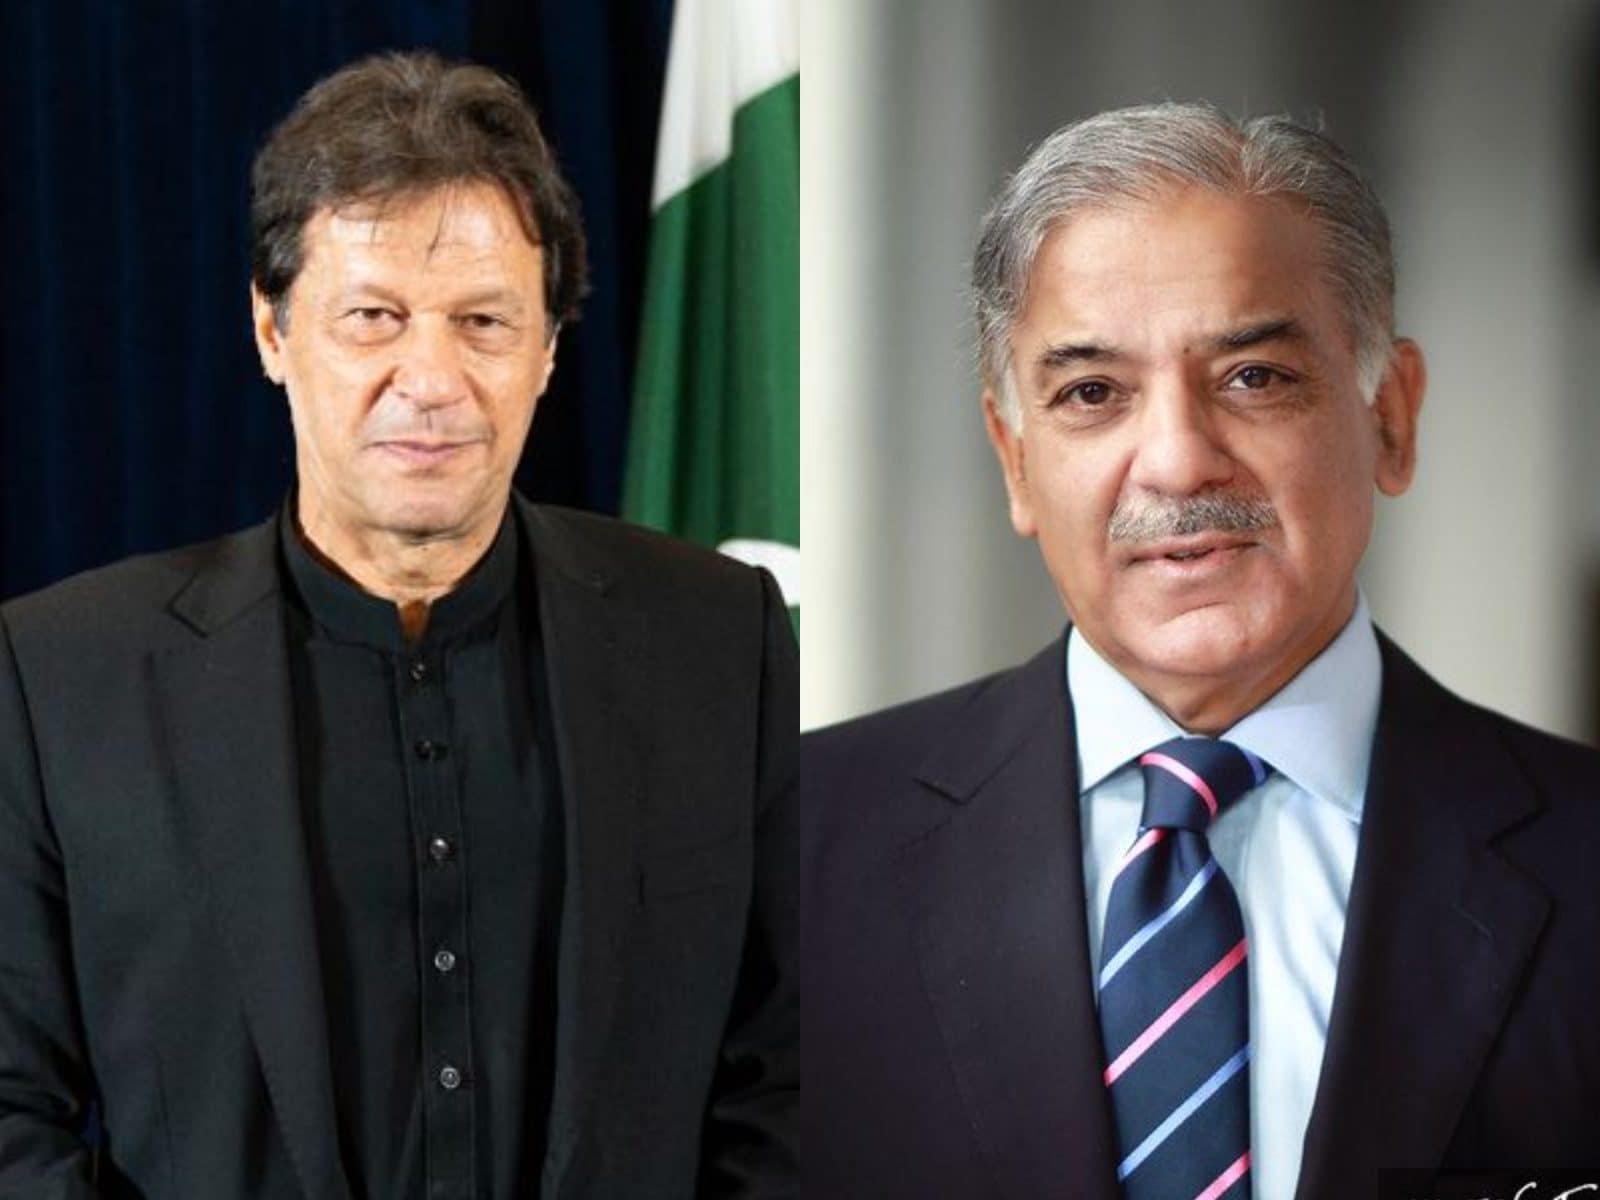 Pakistan Political : इमरान खान की होगी विदाई, शाहबाज शरीफ बनेंगे पाक के नए प्रधानमंत्री!